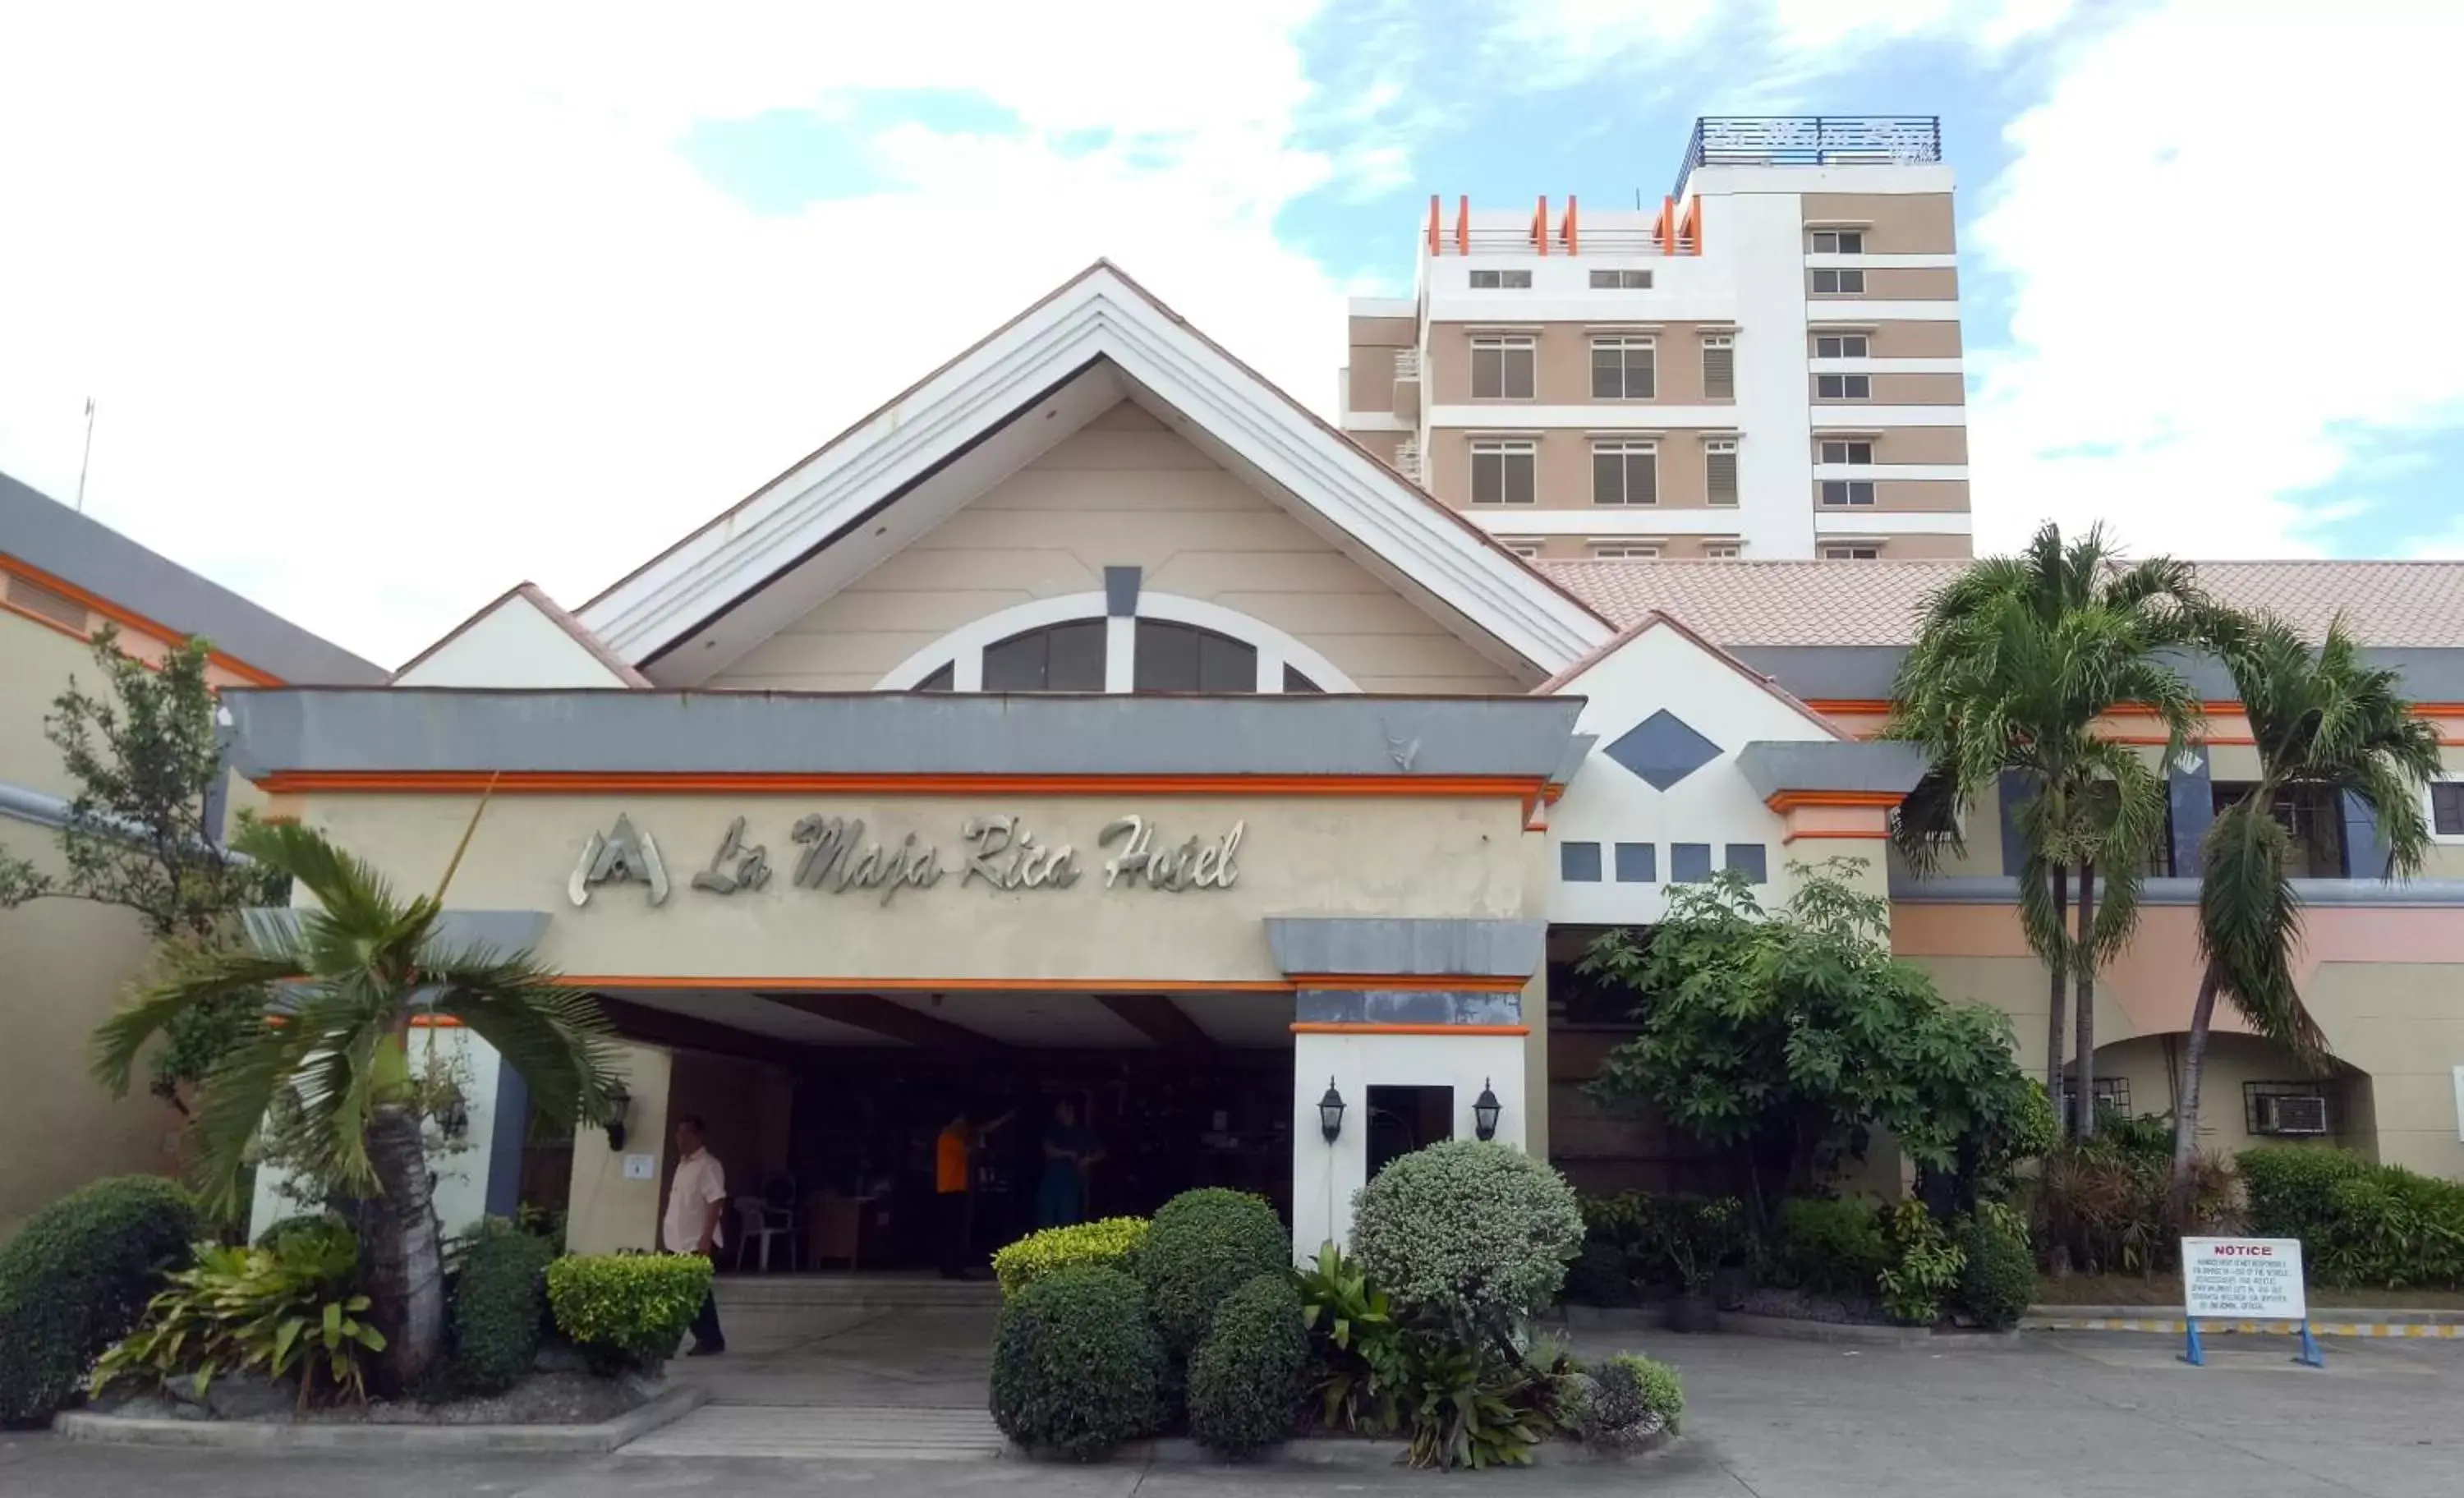 Facade/entrance, Property Building in La Maja Rica Hotel